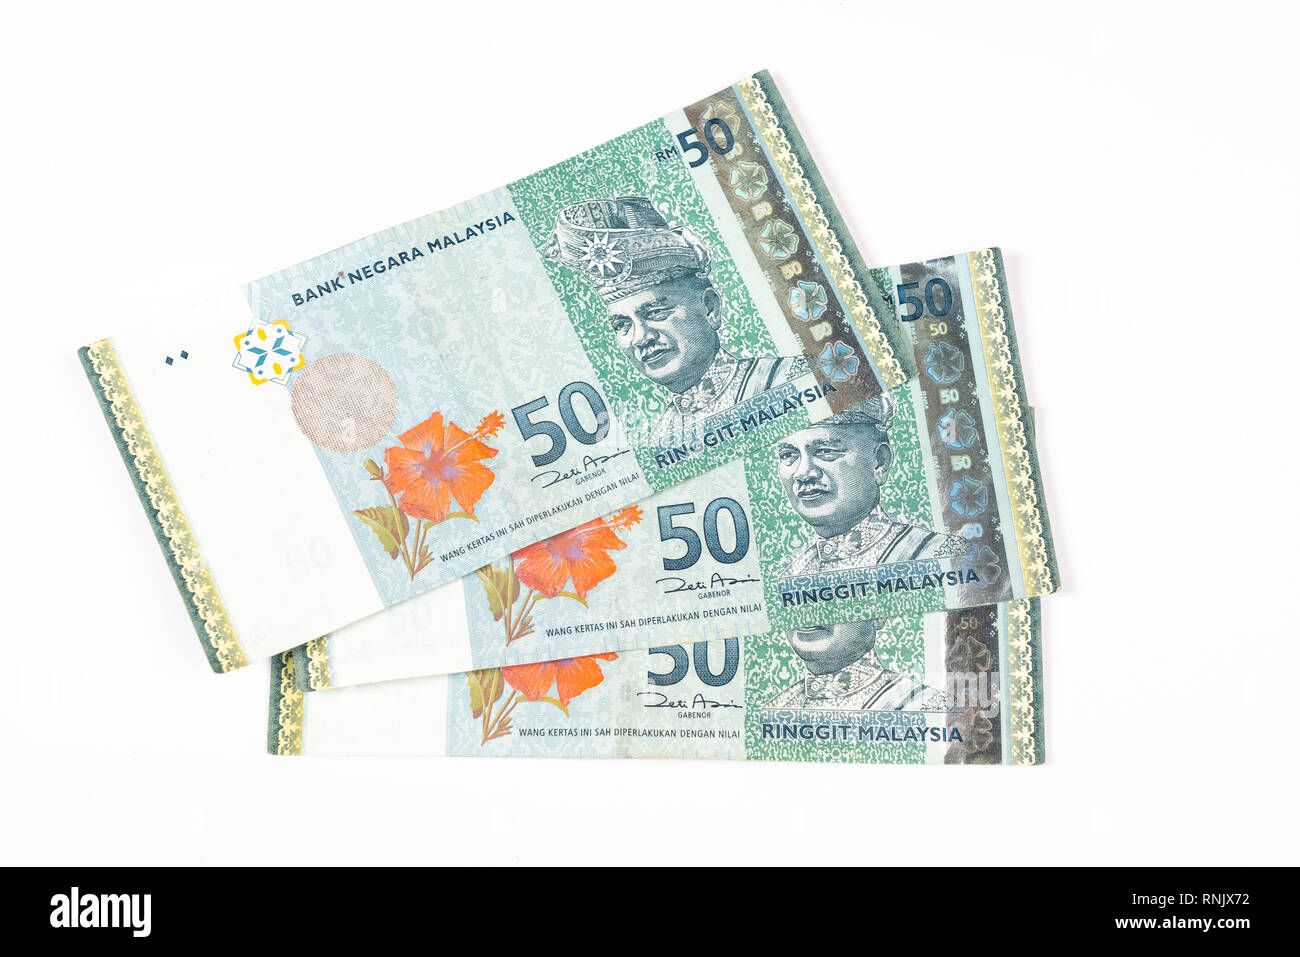 Trois billets de 50 Ringgit malaisien sur une surface blanche Banque D'Images